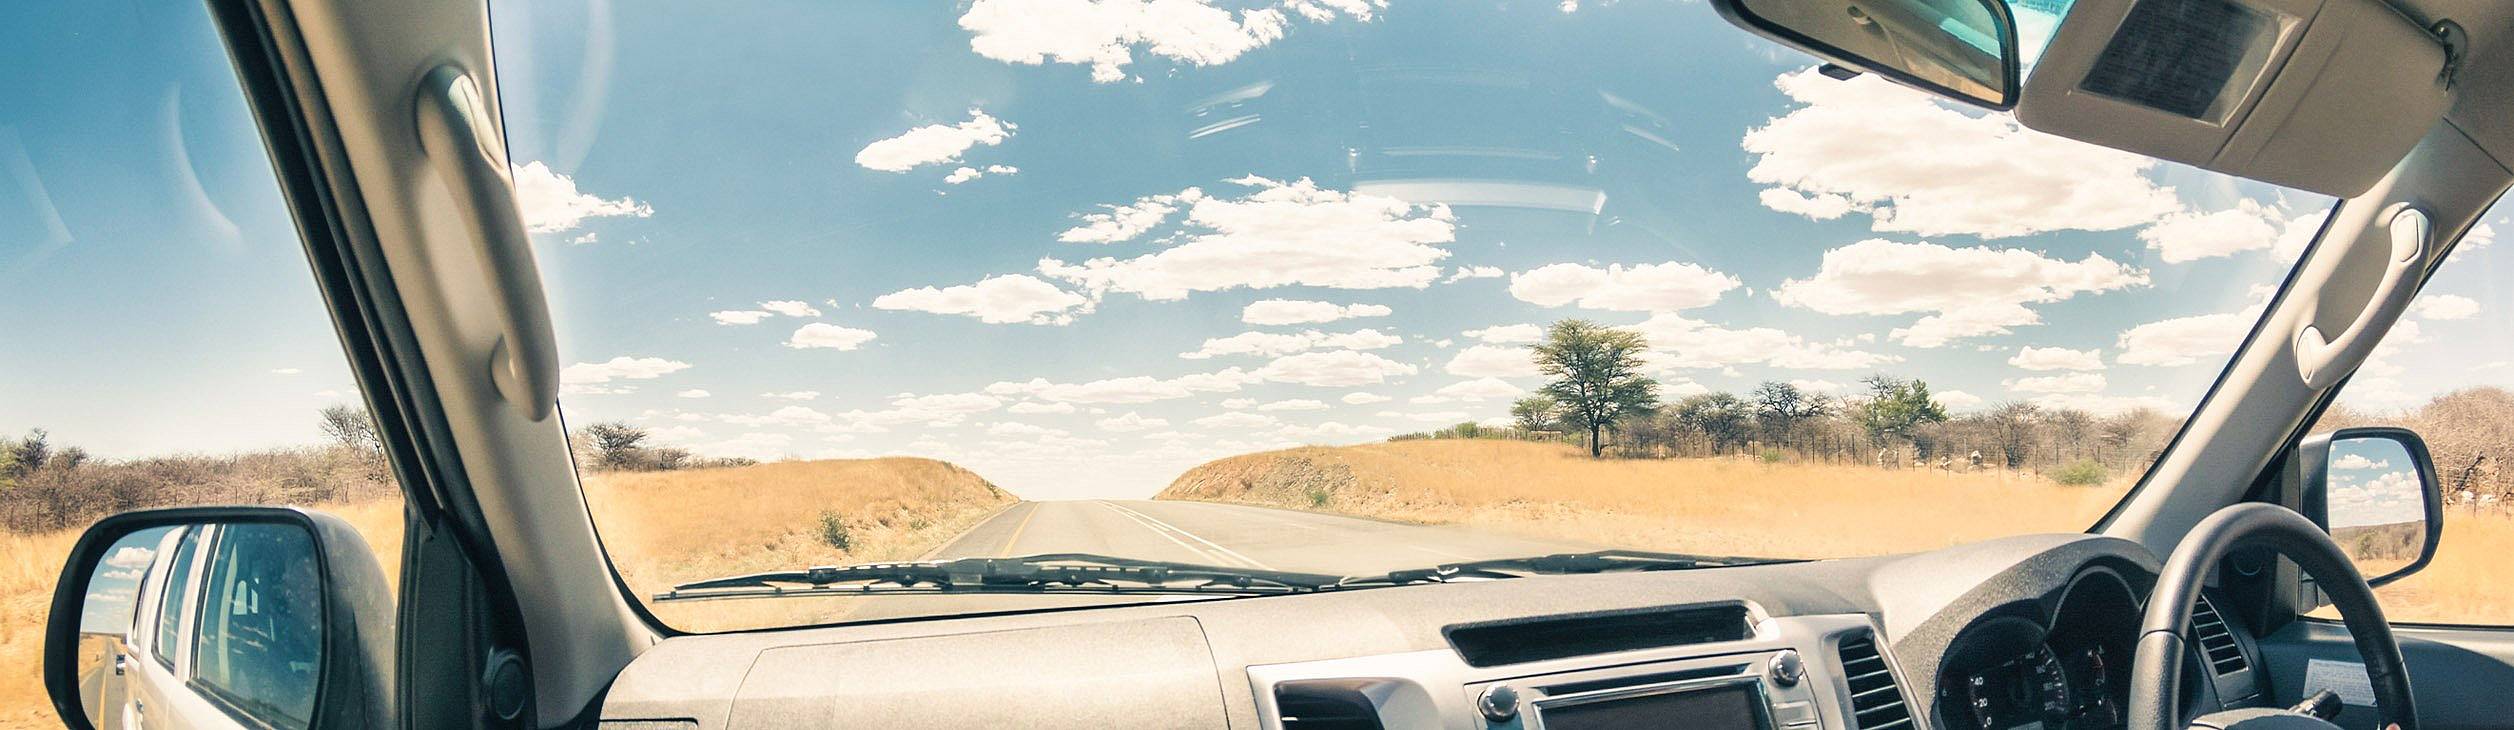 Rutas en coche por Namibia